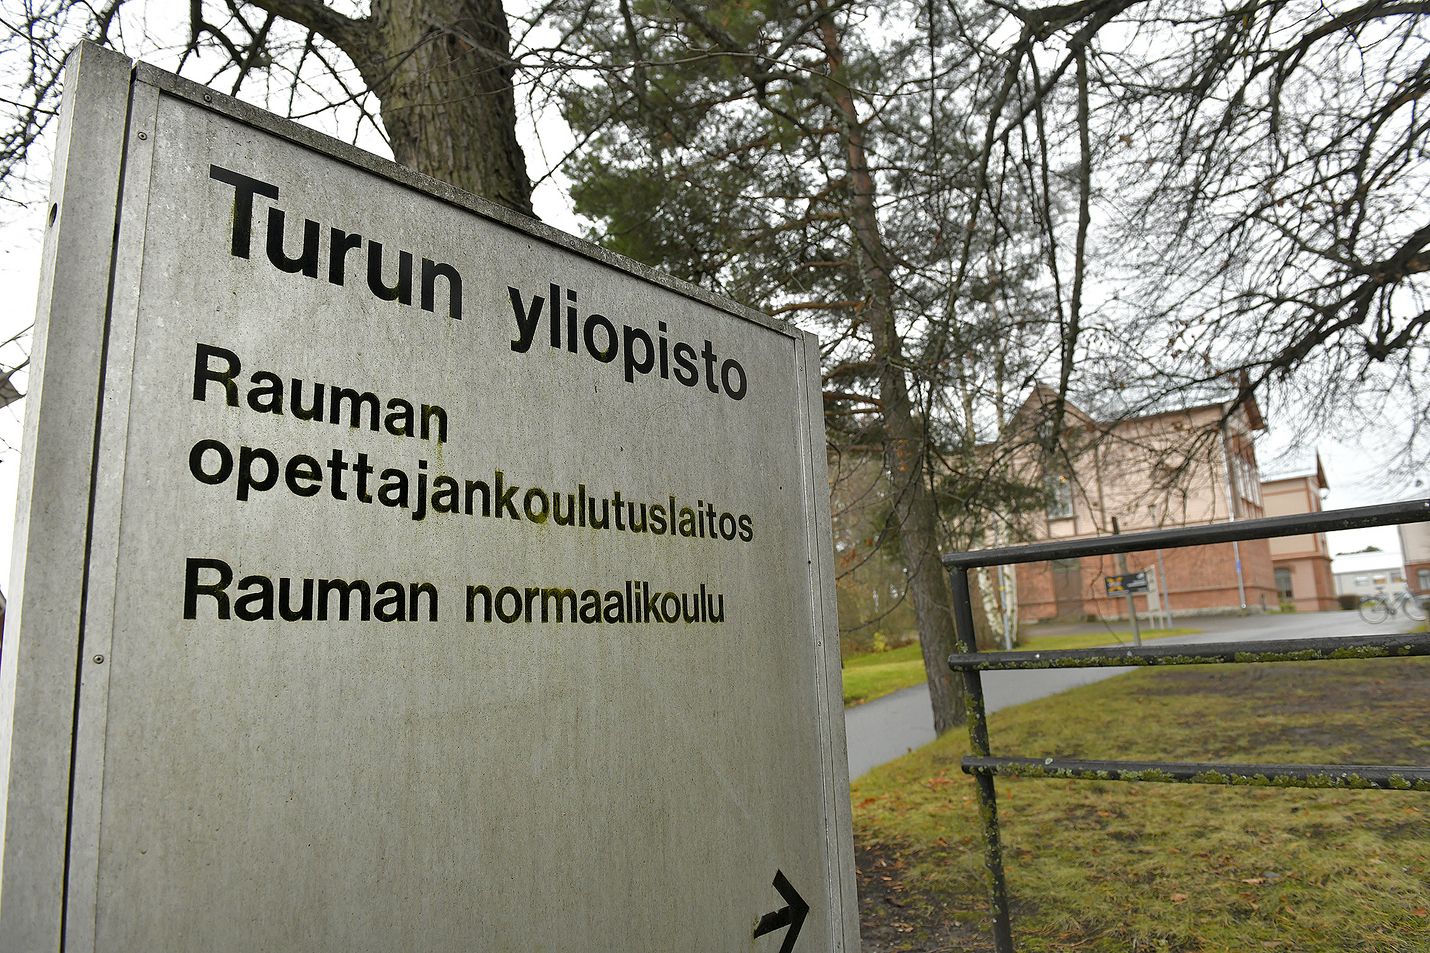 Raumalaisen opettajankoulutuksen 120-vuotias historia jatkuu.